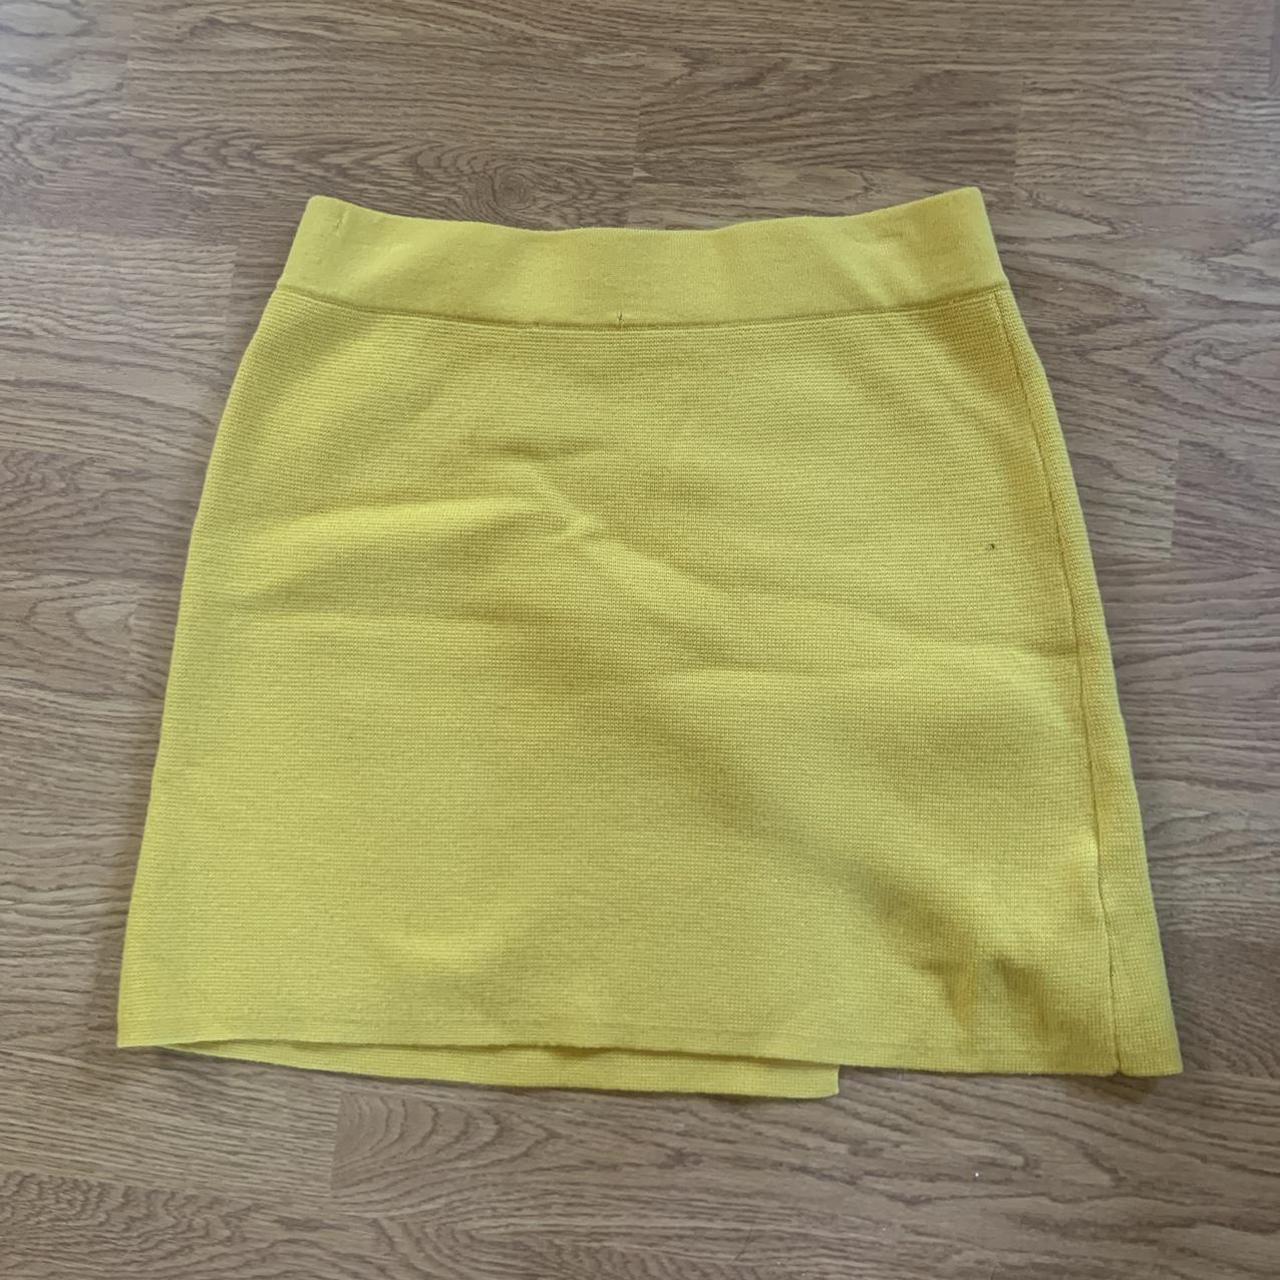 Mustard yellow skirt #pencilskirt #skirt #yellow - Depop